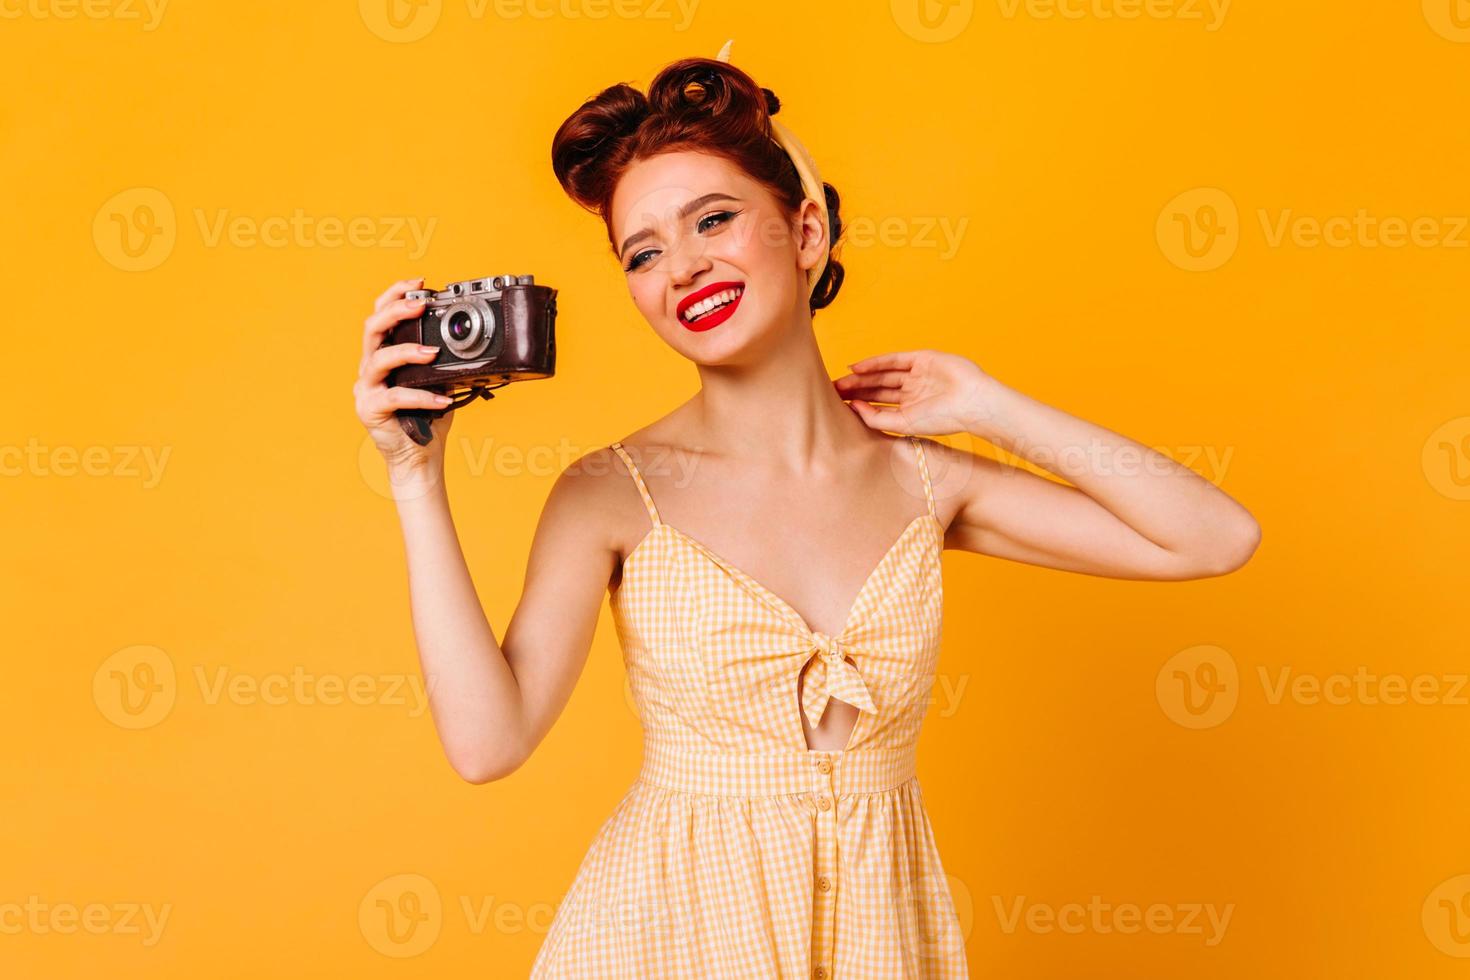 chica pinup alegre en vestido tomando fotos. foto de estudio de una mujer elegante que se ríe con una cámara aislada